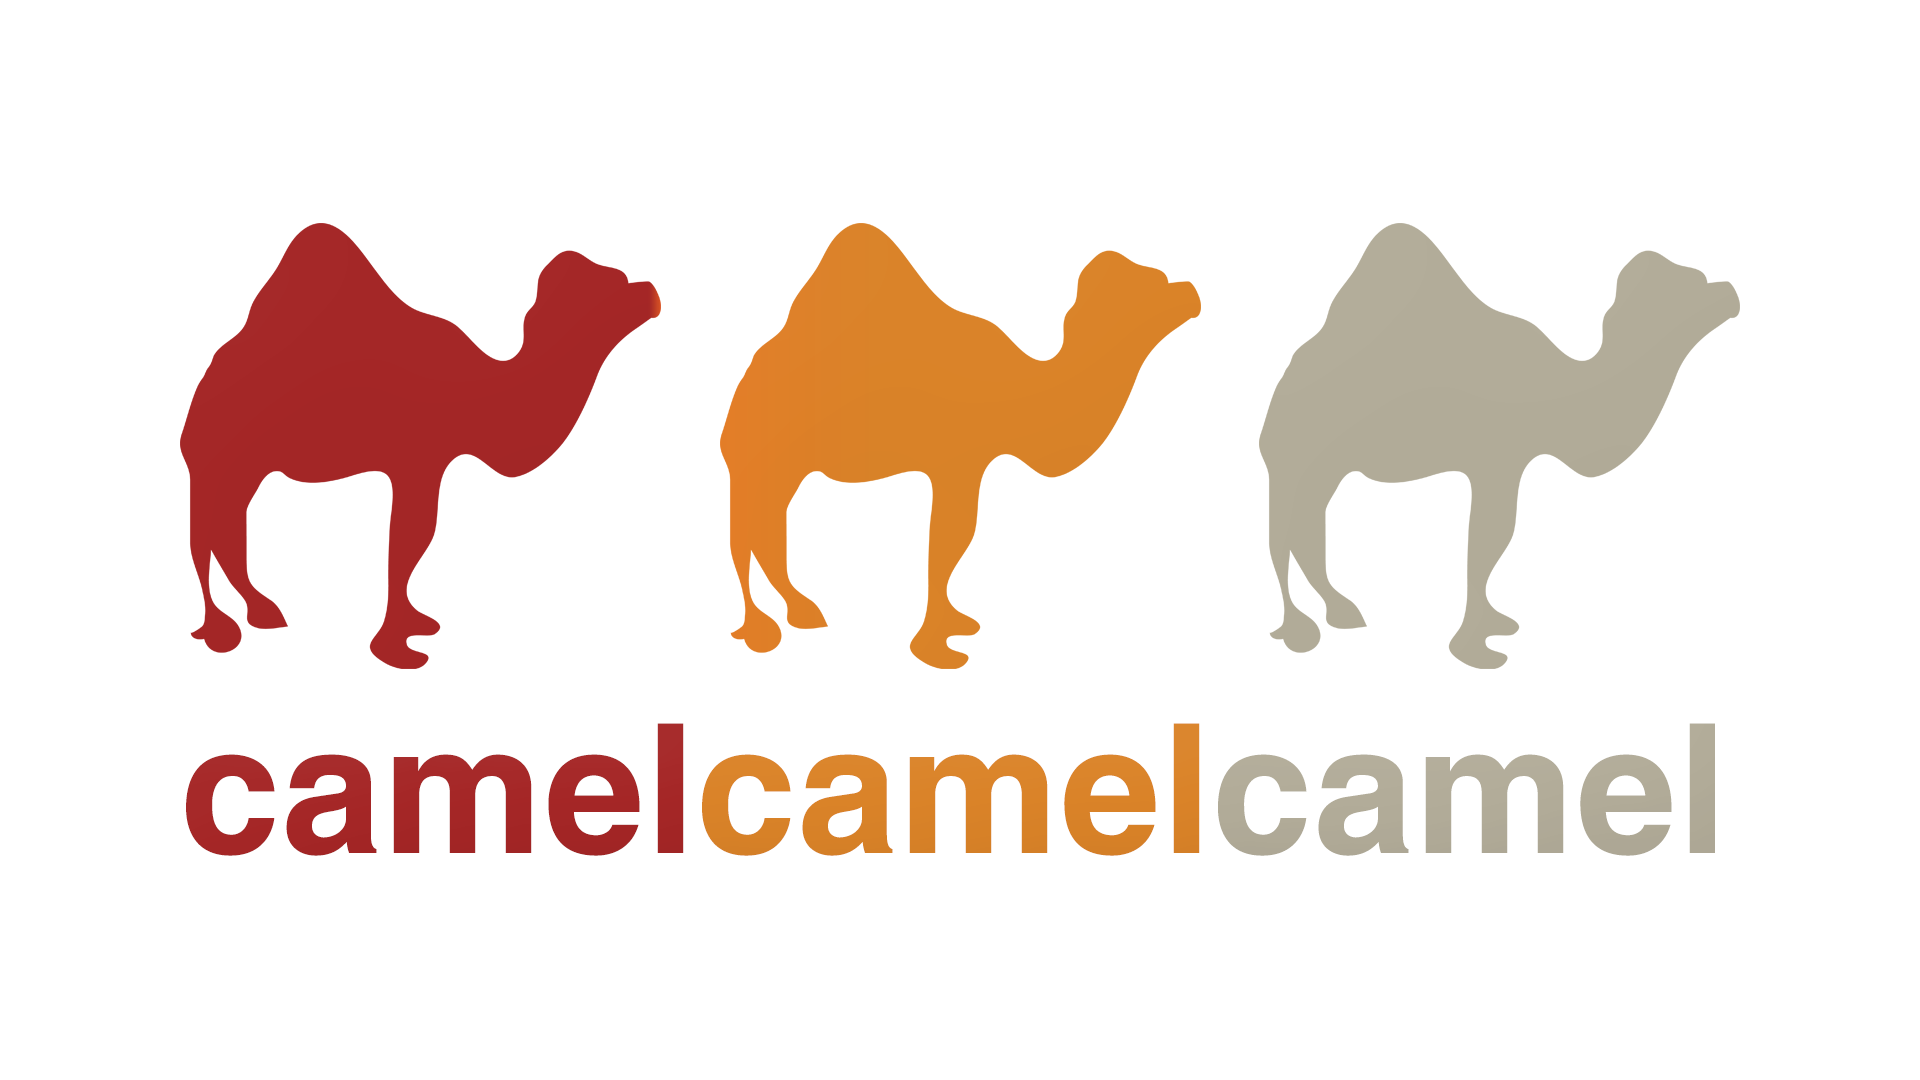 The camelcamelcamel logo.